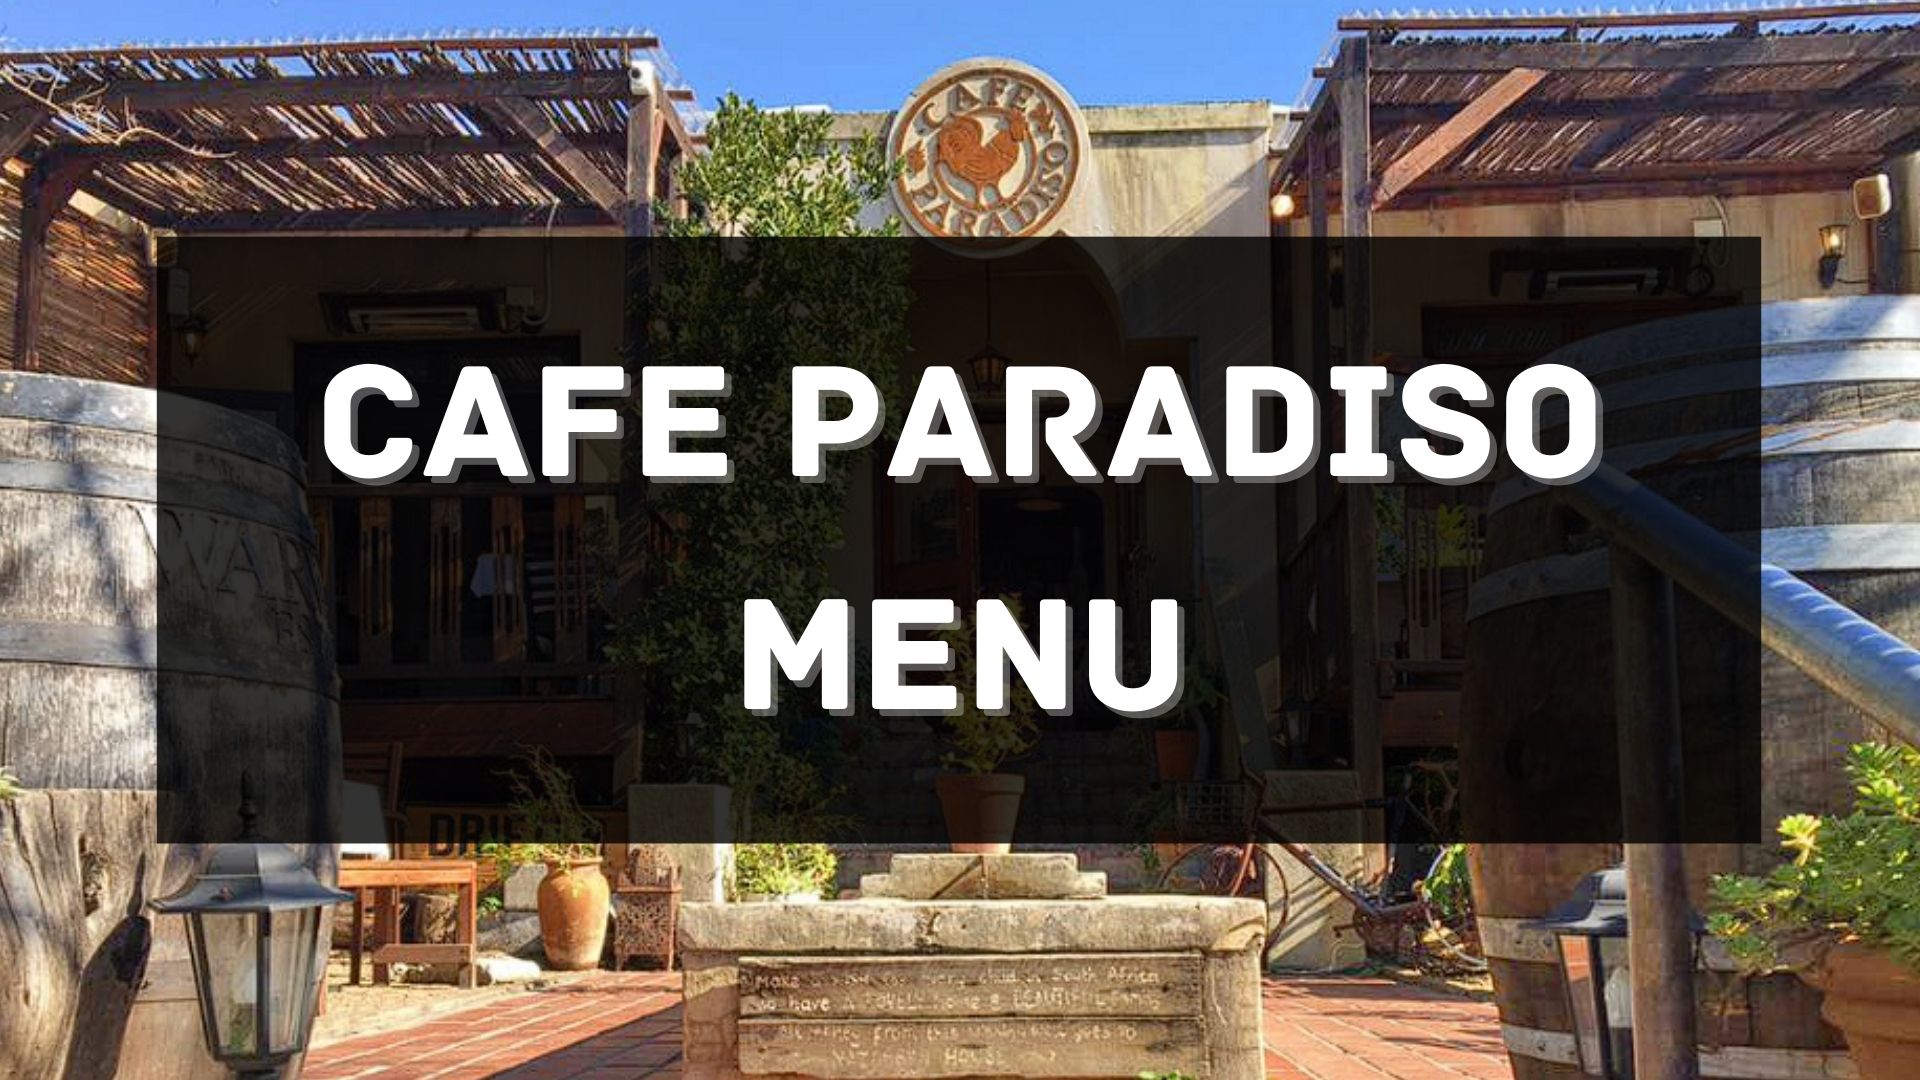 Cafe Paradiso Menu South Africa